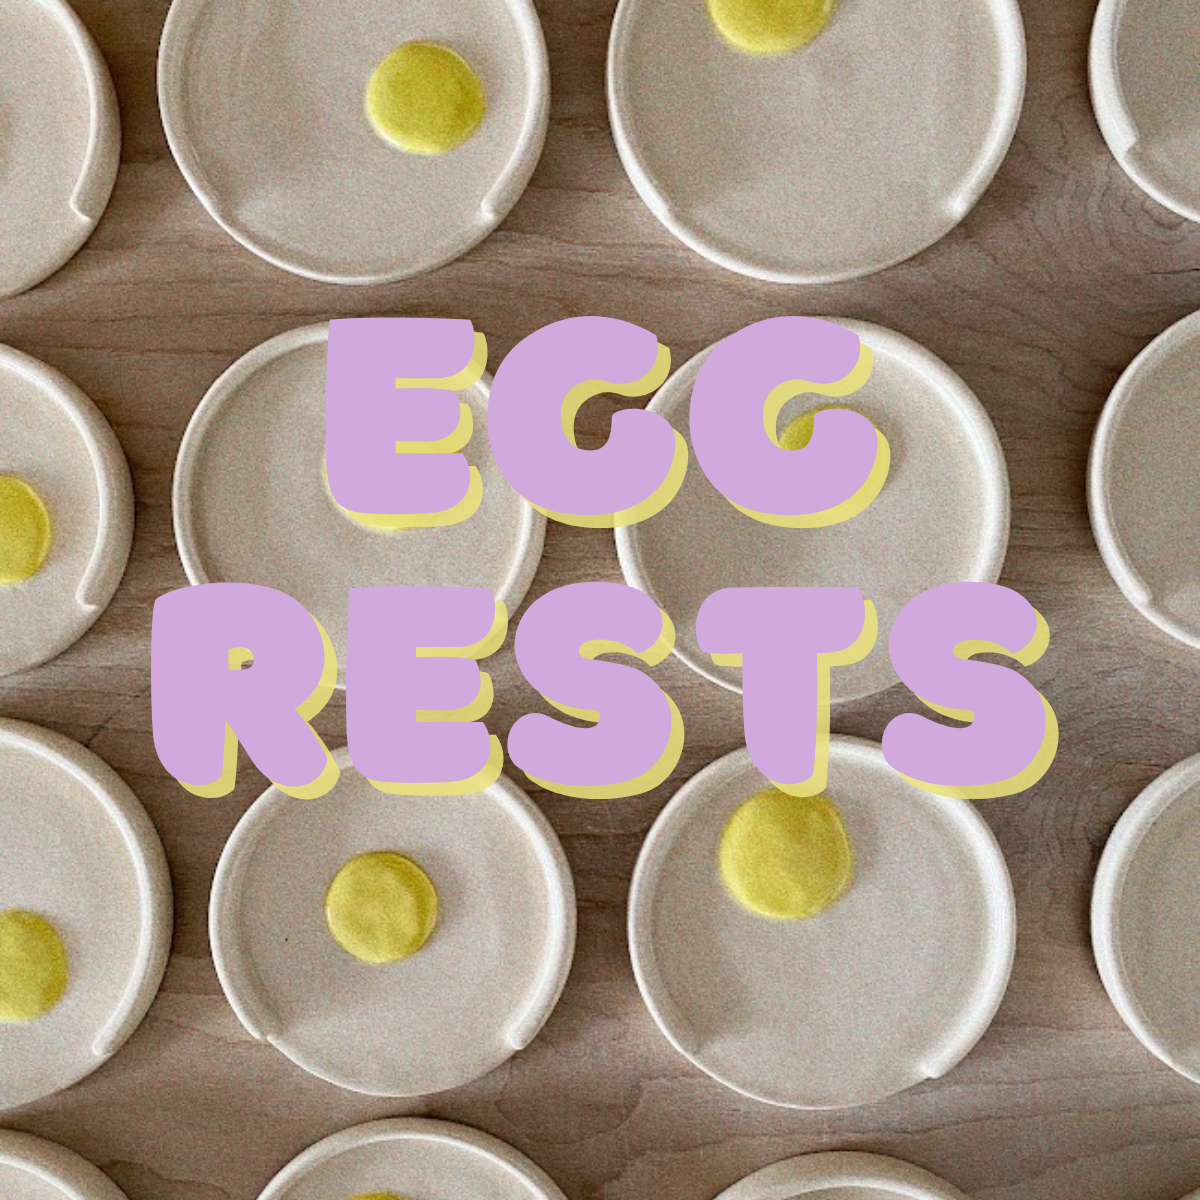 Egg Rests